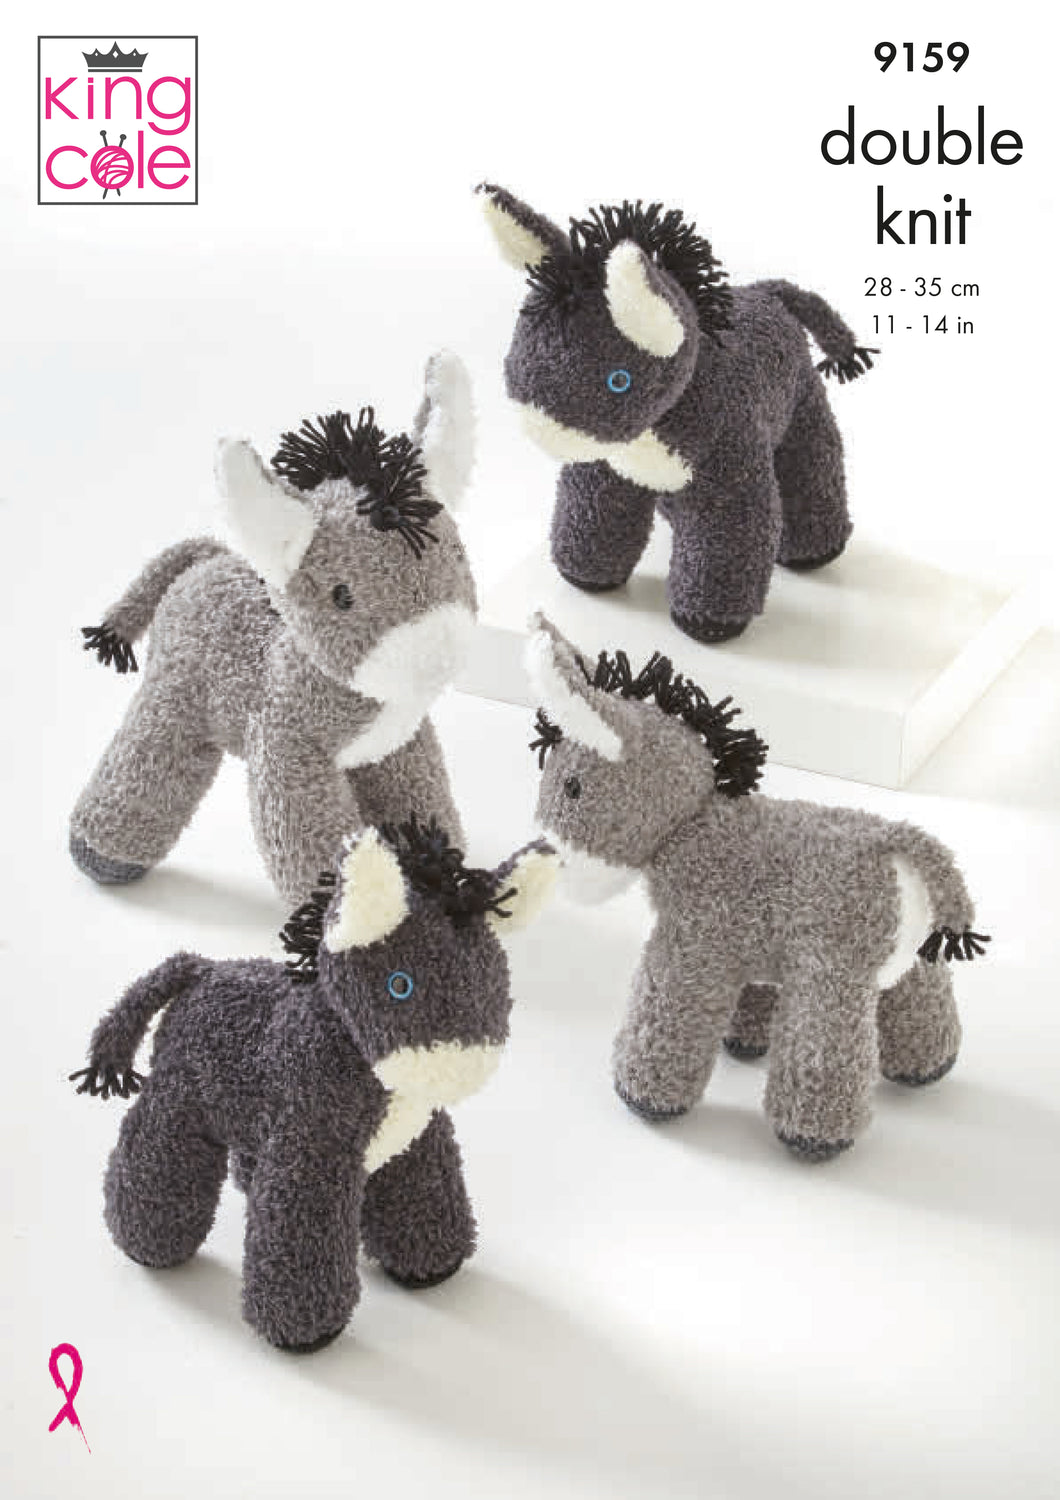 Donkeys Knitted in Truffle 9159